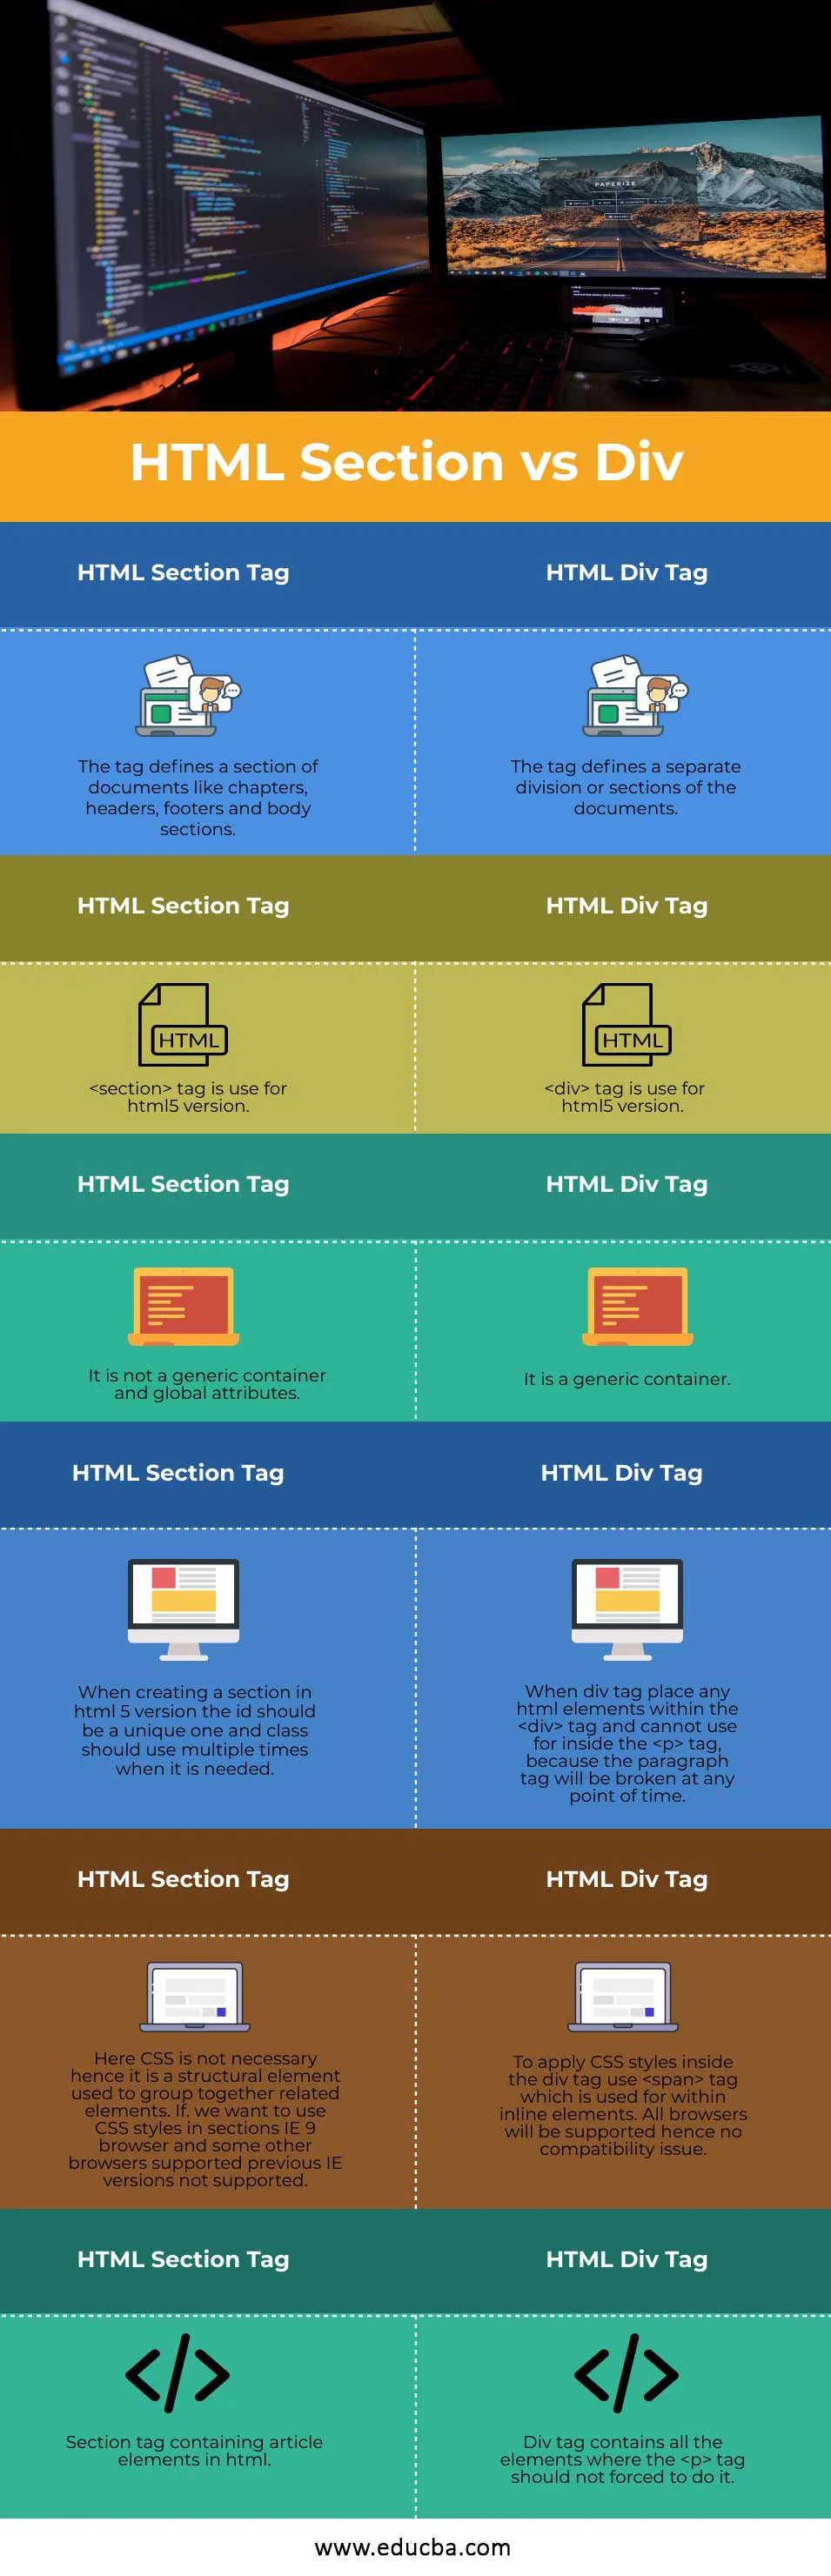 HTML-Section-vs-Div-info